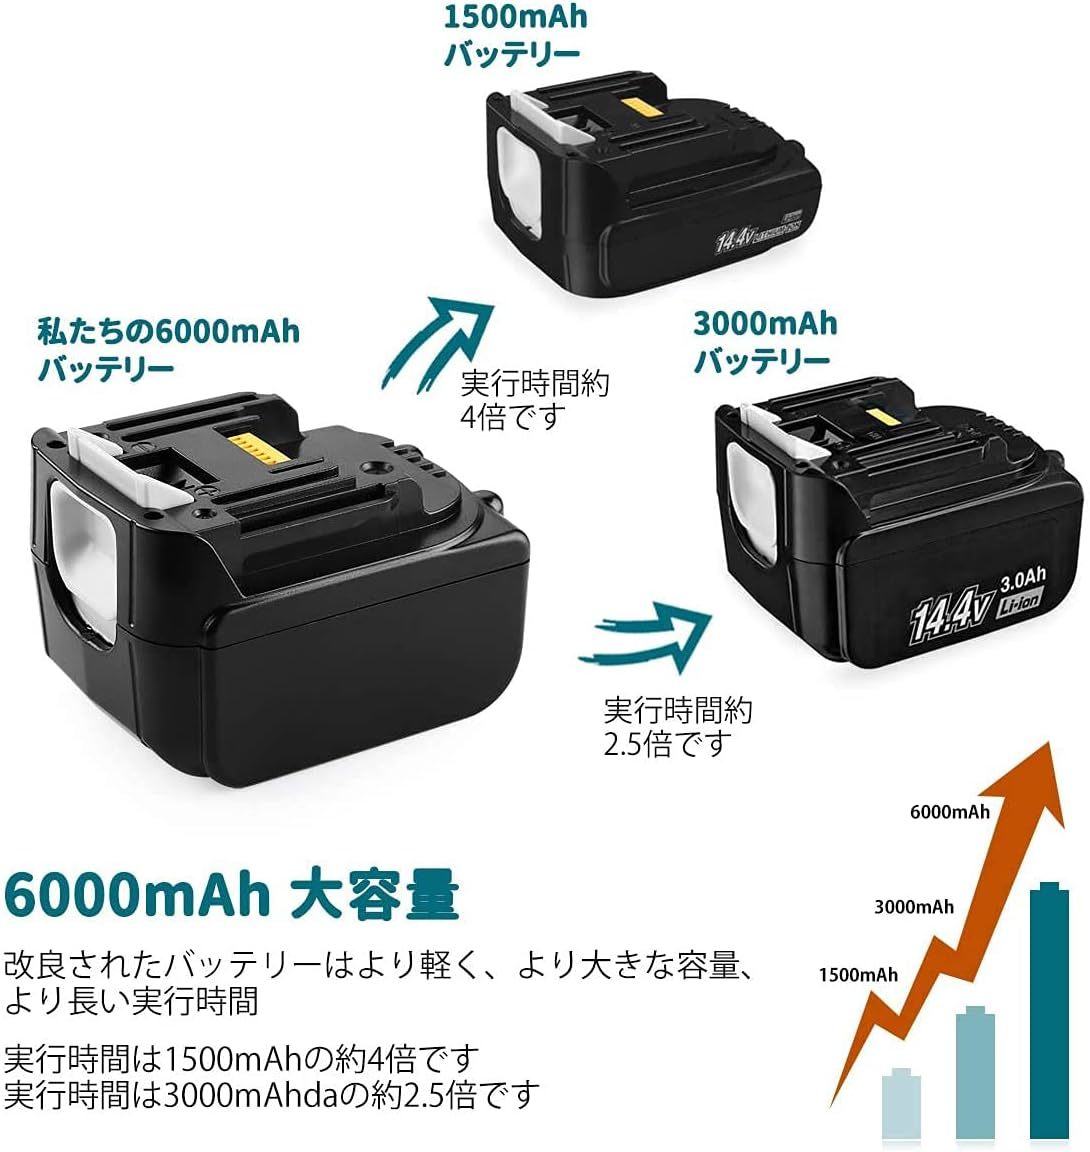 【新品】Ehomtikk マキタ14.4V互換バッテリー 2個セット BL1460B 大容量6000mAh 6.0Ah 電動工具用 LED残量表示付き BL1415 BL1430など対応_画像2